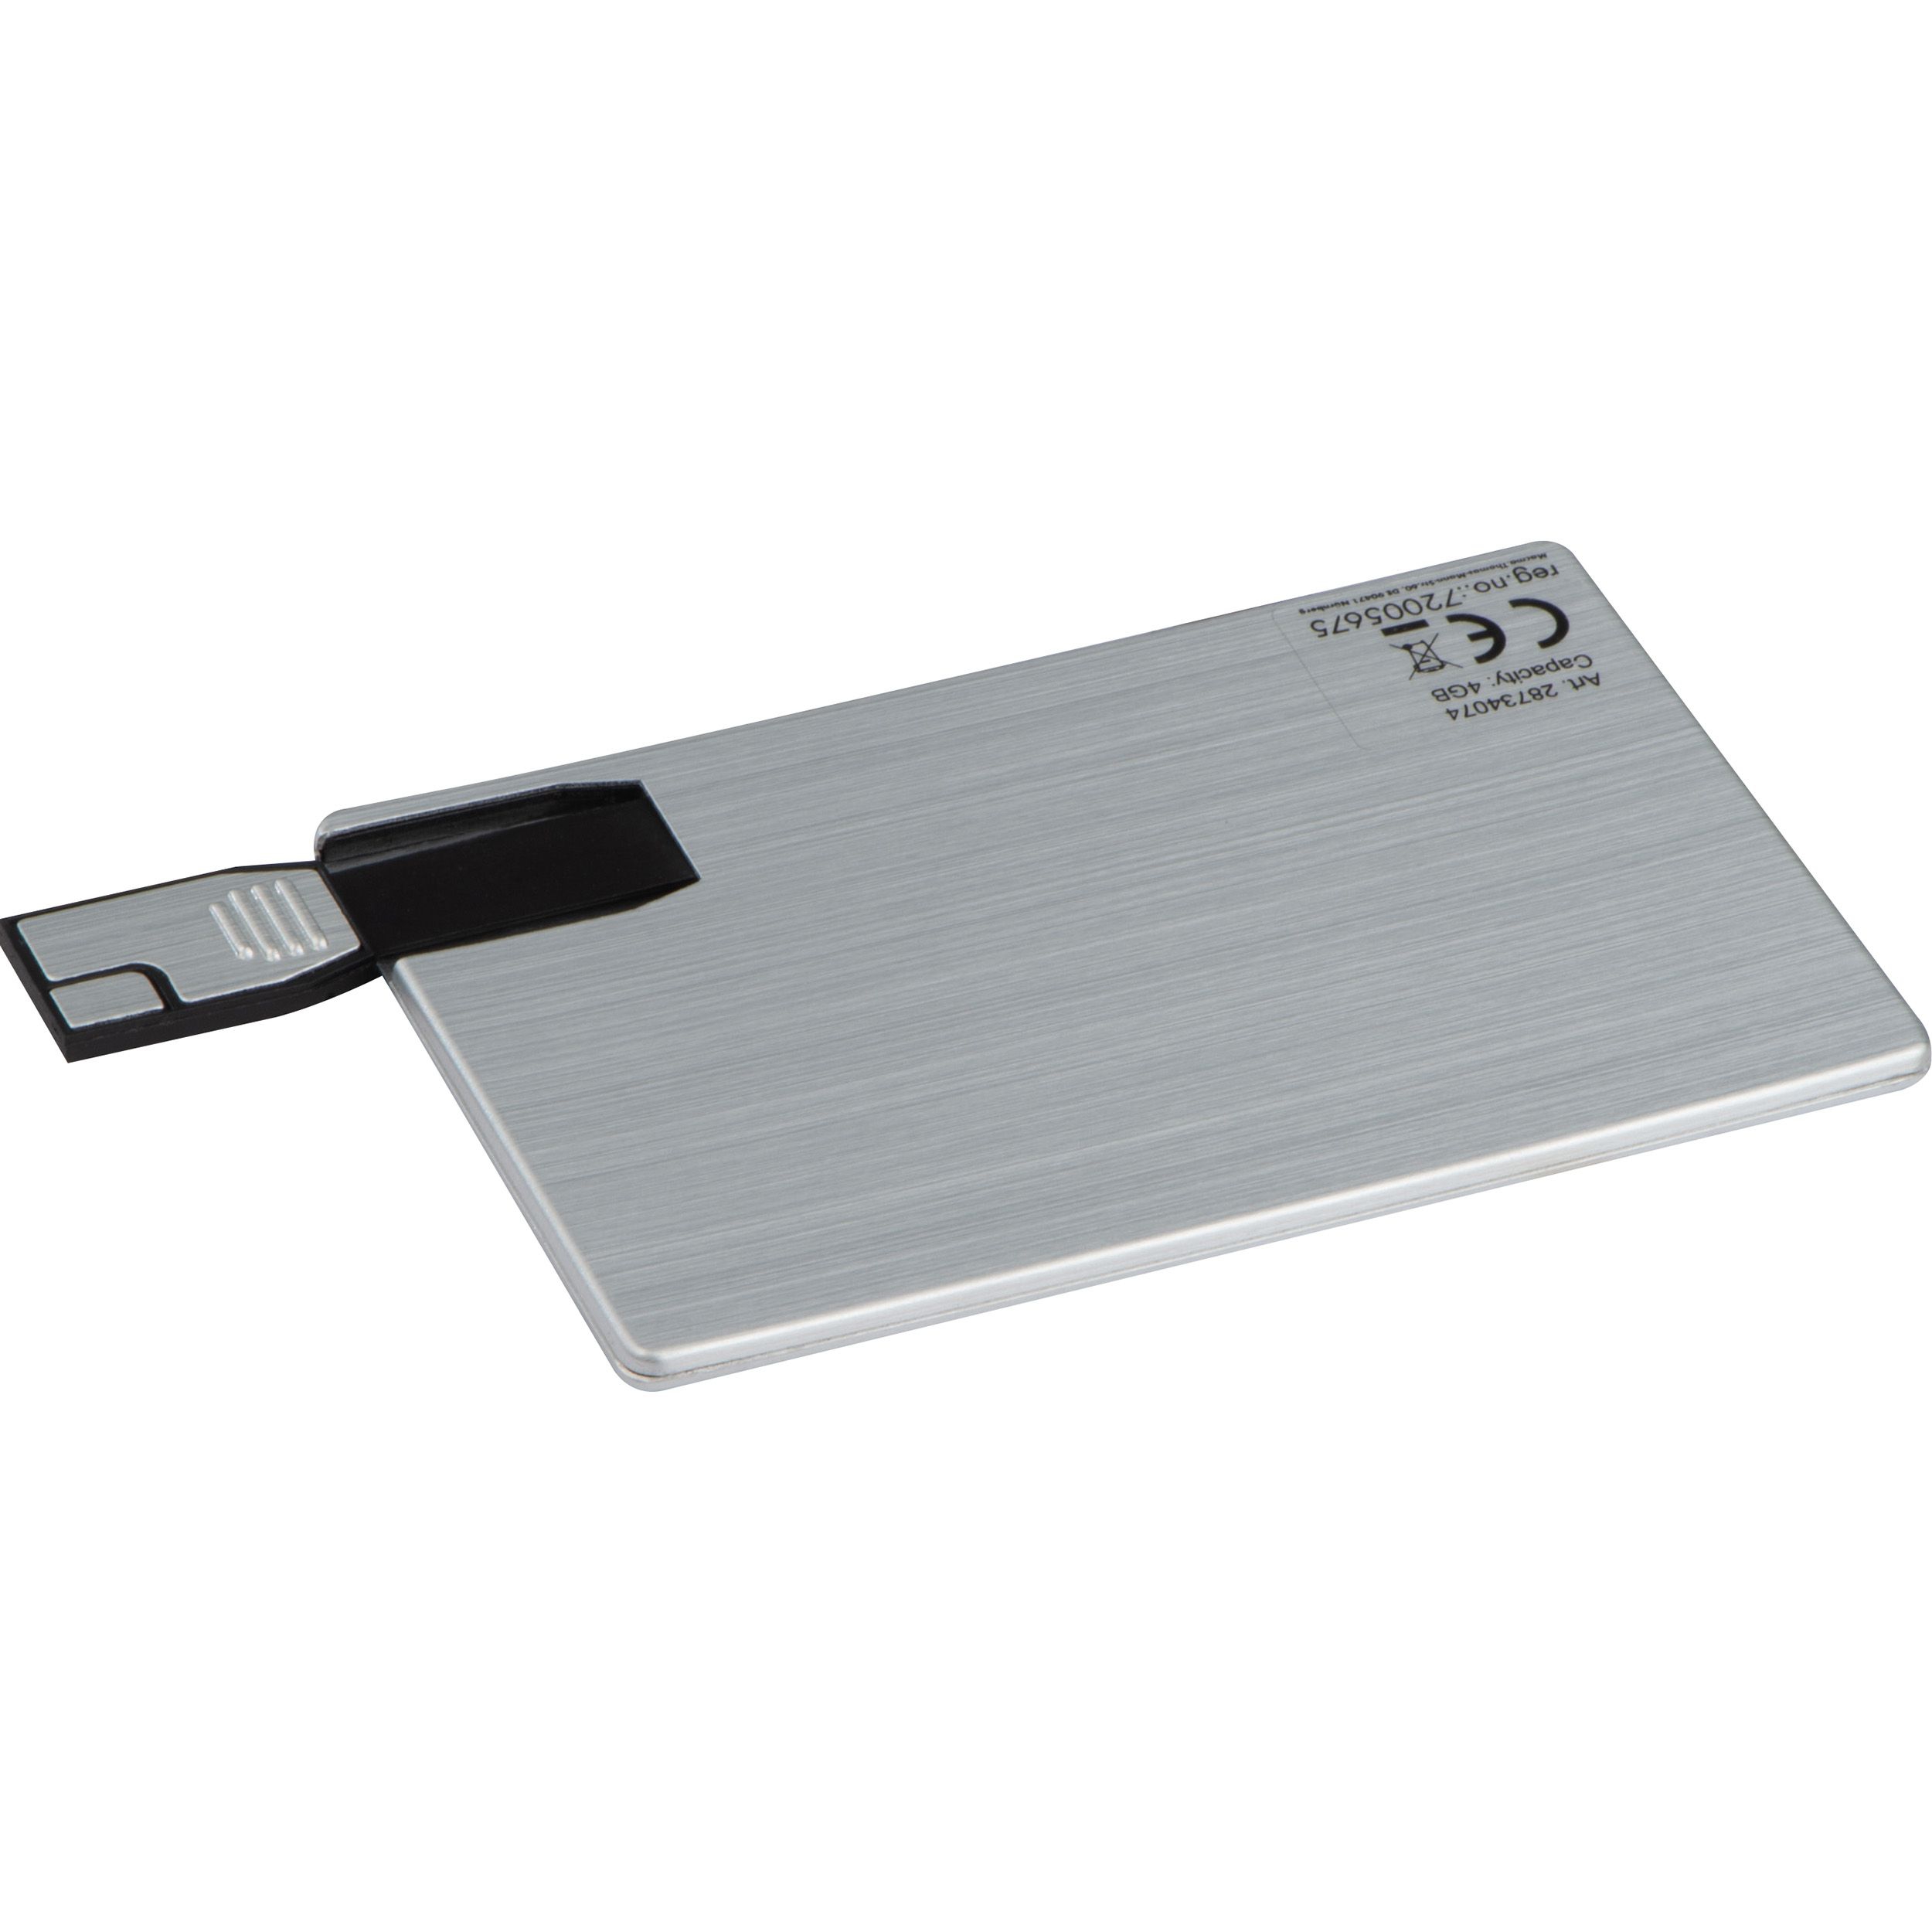 USB Karte aus Metall  8GB, silbergrau